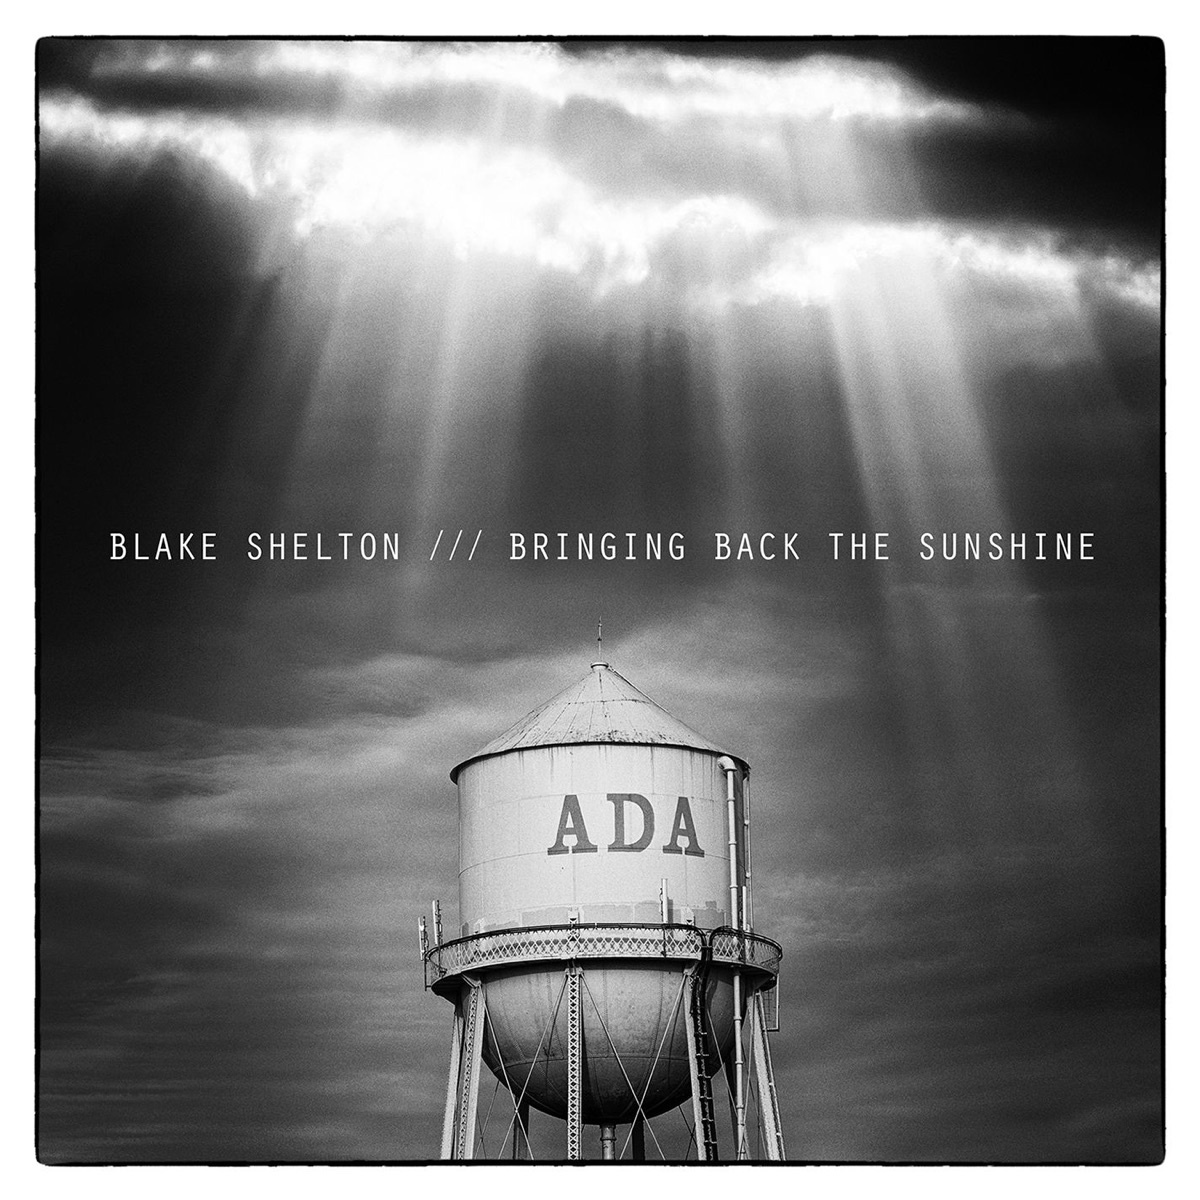 Blake Shelton - Album by Blake Shelton - Apple Music